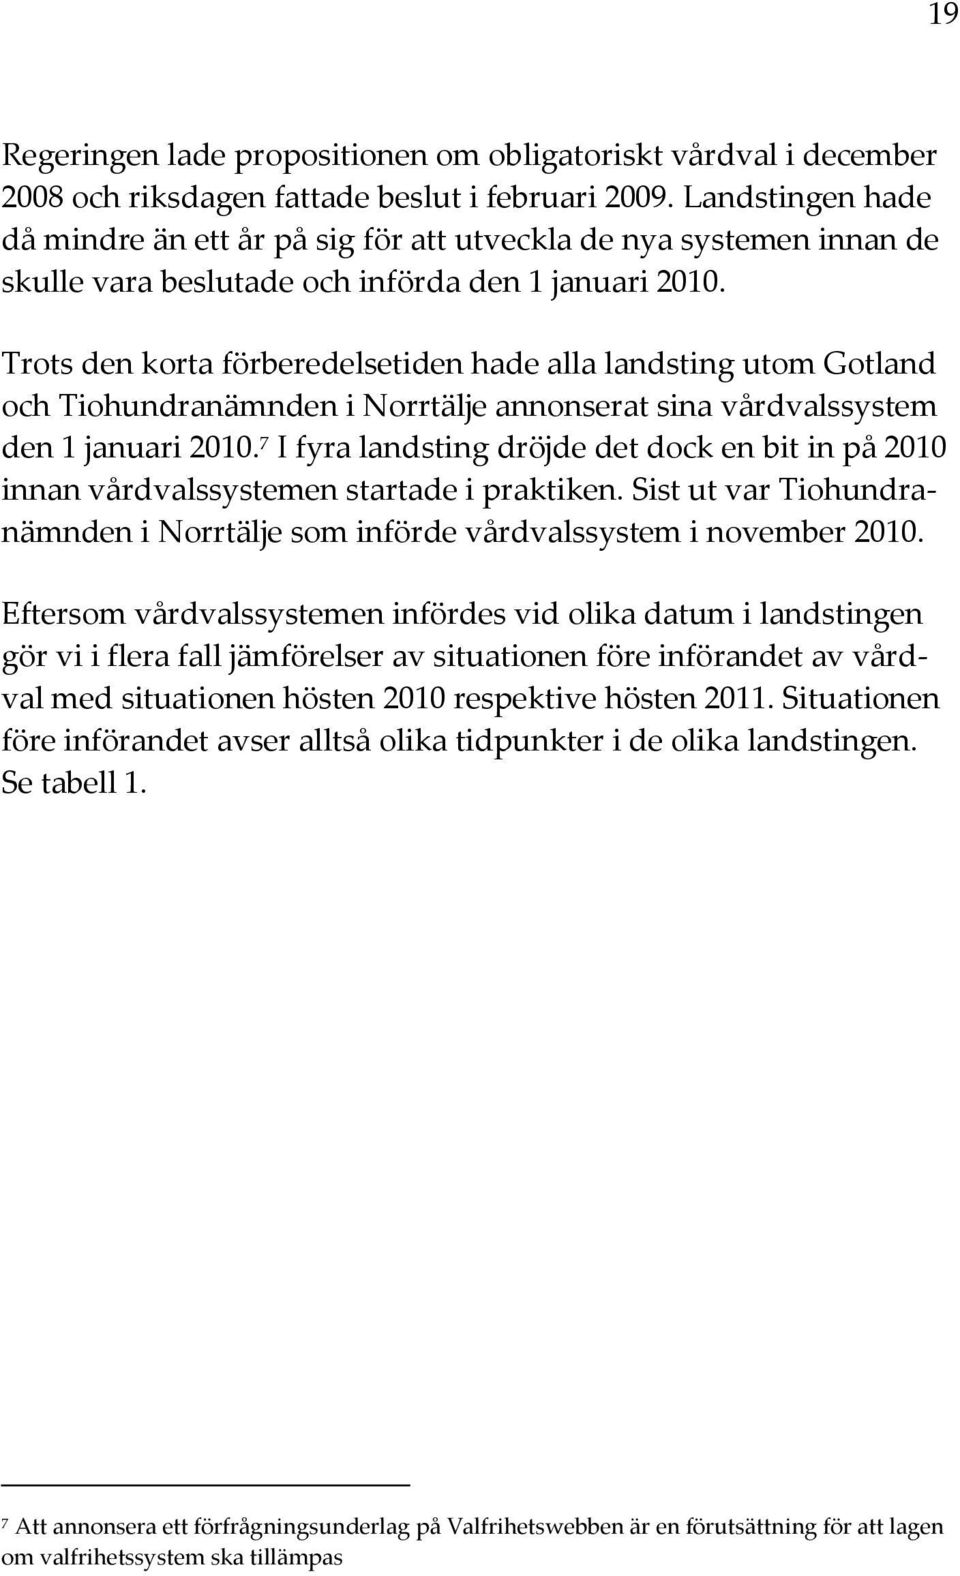 Trots den korta förberedelsetiden hade alla landsting utom Gotland och Tiohundranämnden i Norrtälje annonserat sina vårdvalssystem den 1 januari 2010.